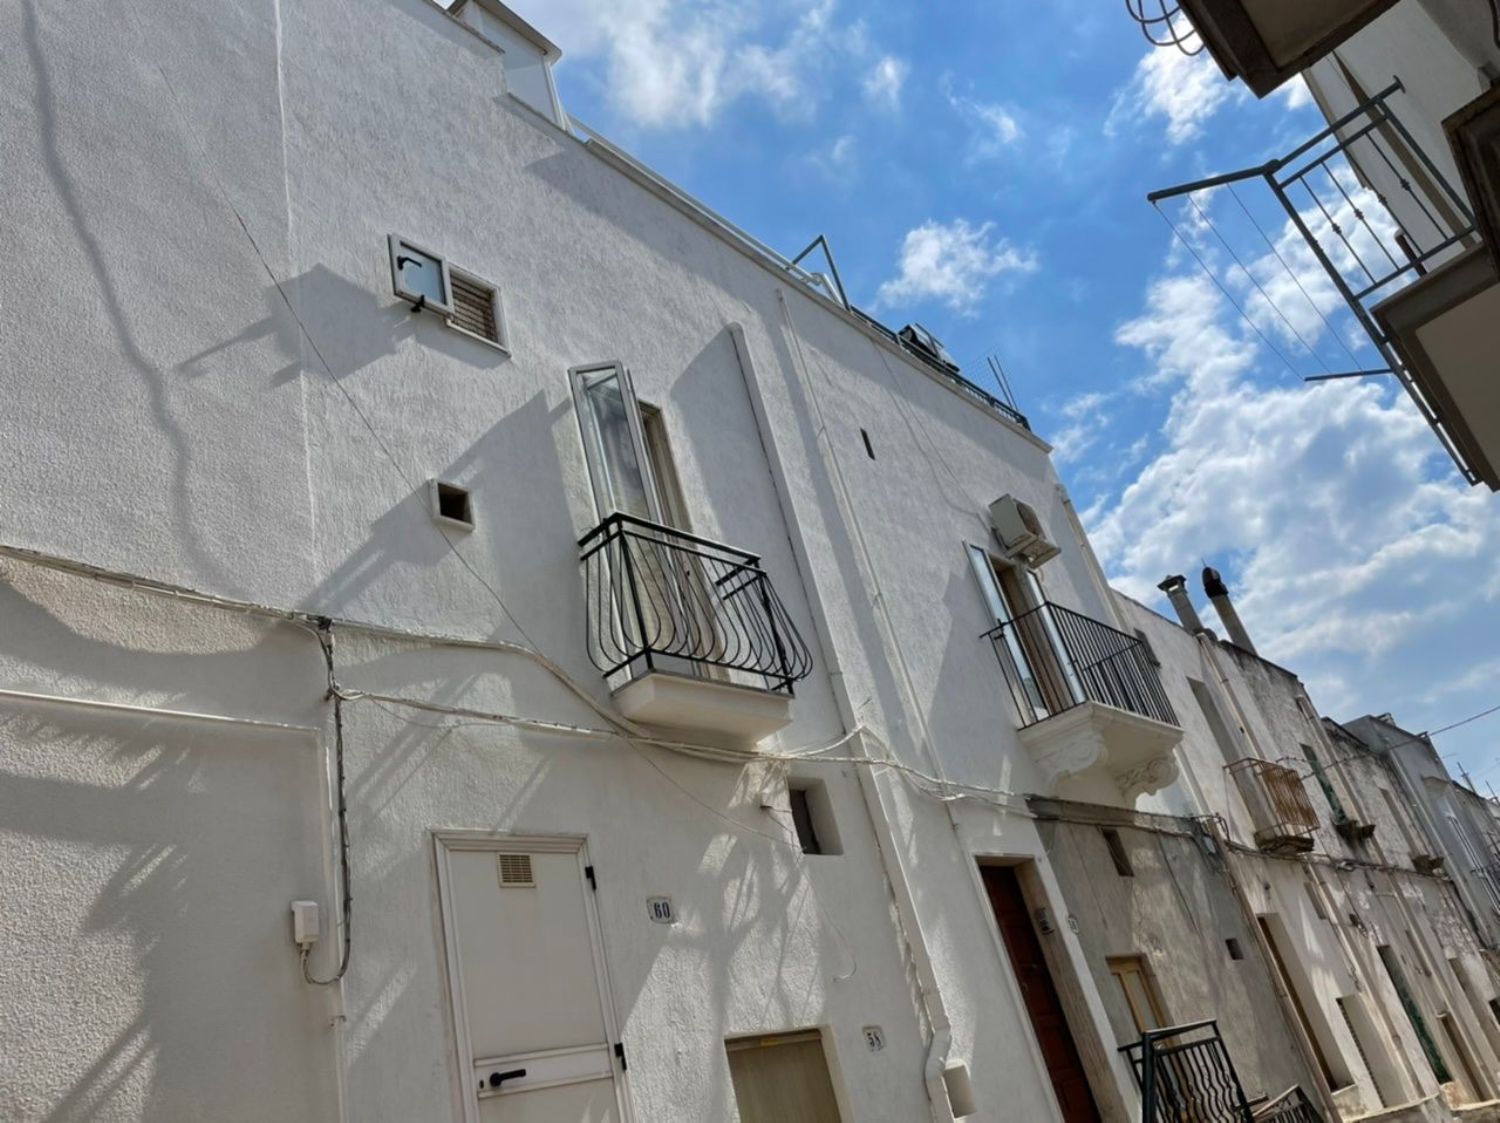 Duplex in vendita a Ceglie Messapica, 4 locali, prezzo € 75.000 | CambioCasa.it